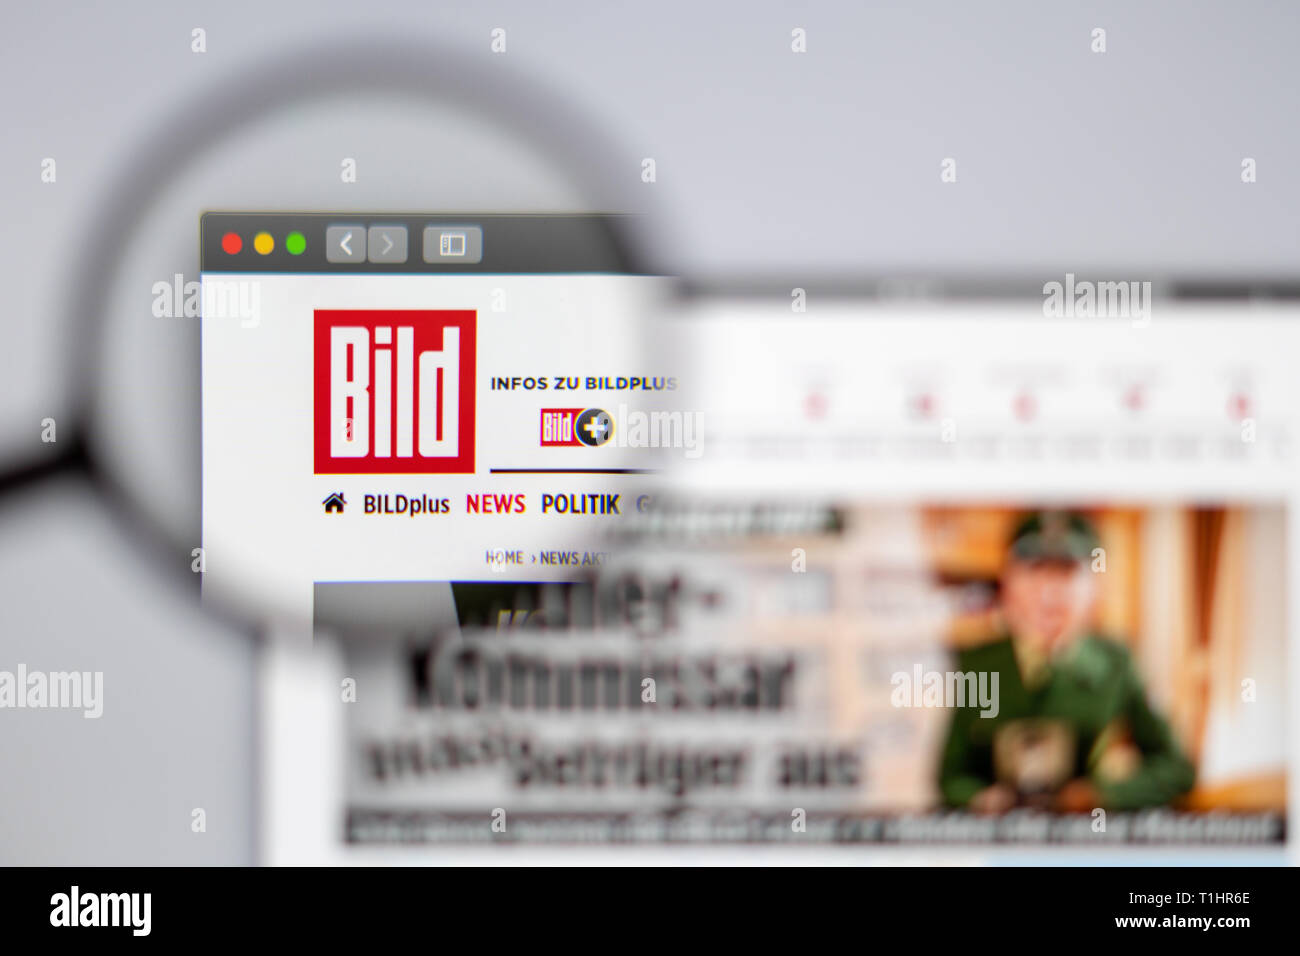 Alemania noticias medios Bild Página de inicio de nuestro sitio web. Bild logo visible a través de una lupa. Foto de stock